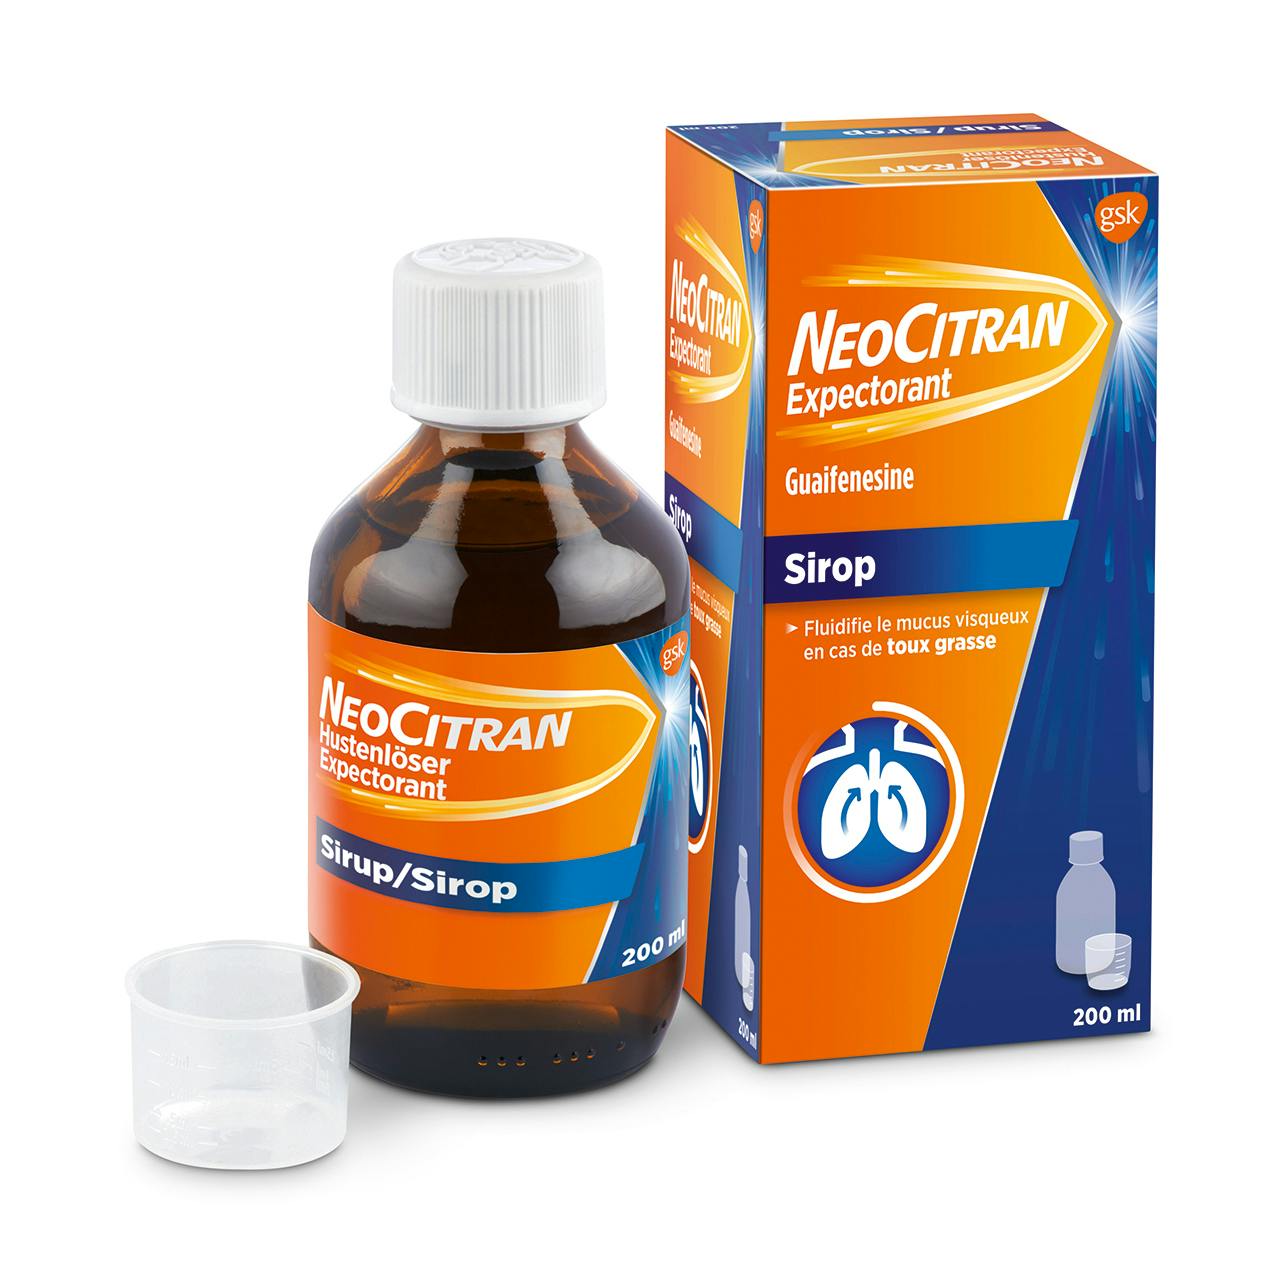 NeoCitran Expectorant en sirop, le traitement contre la toux grasse